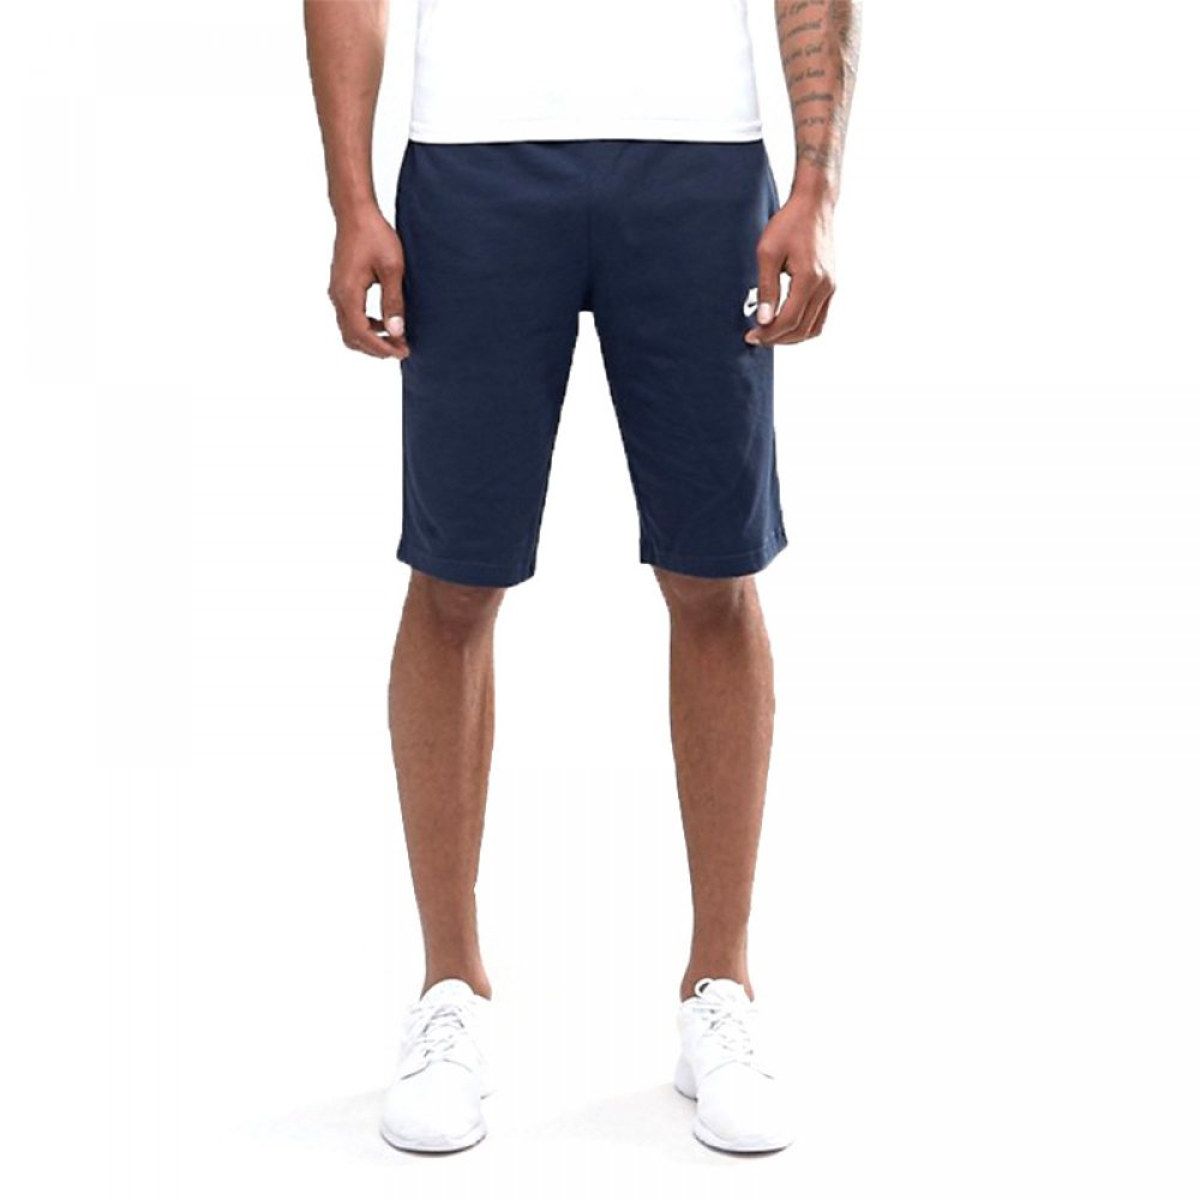 Nike Sportswear Men's Shorts 804419-451